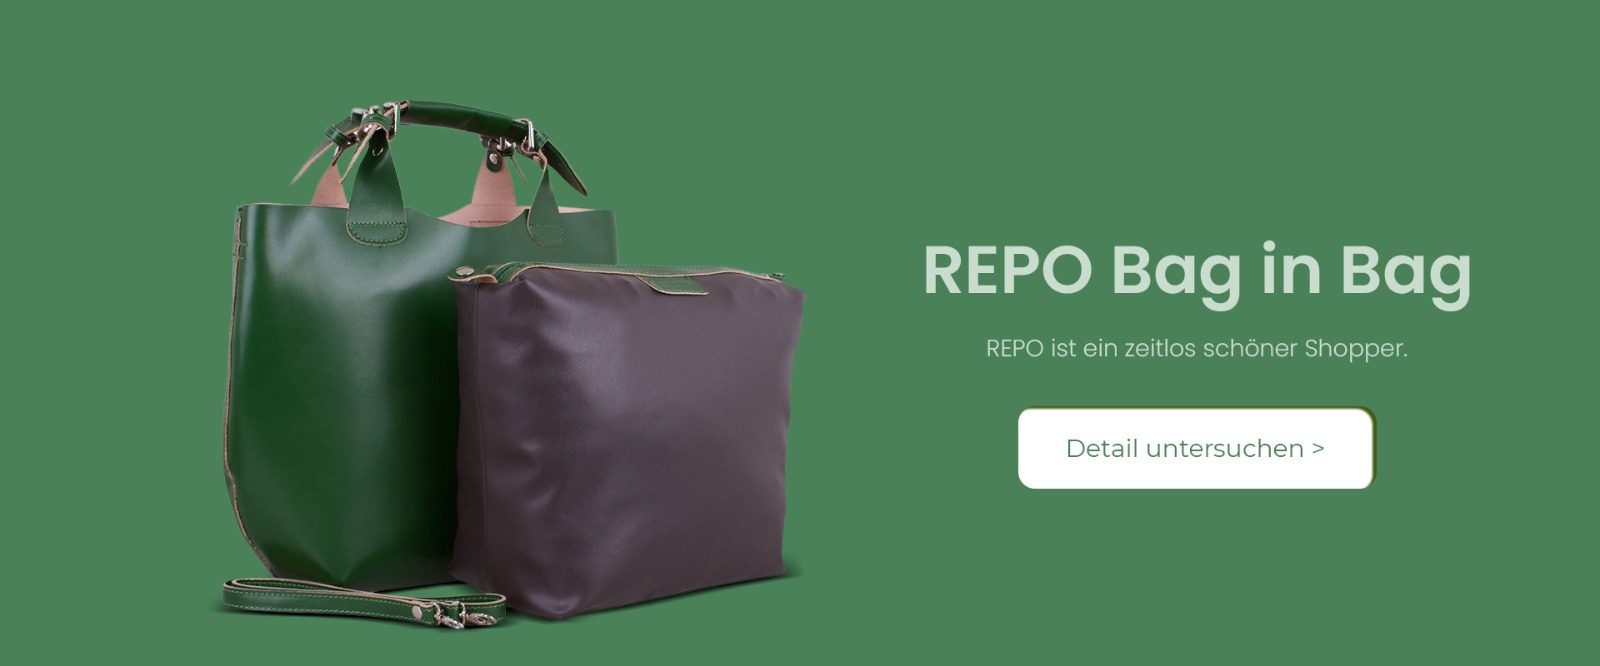 Repo_bag_in_bag